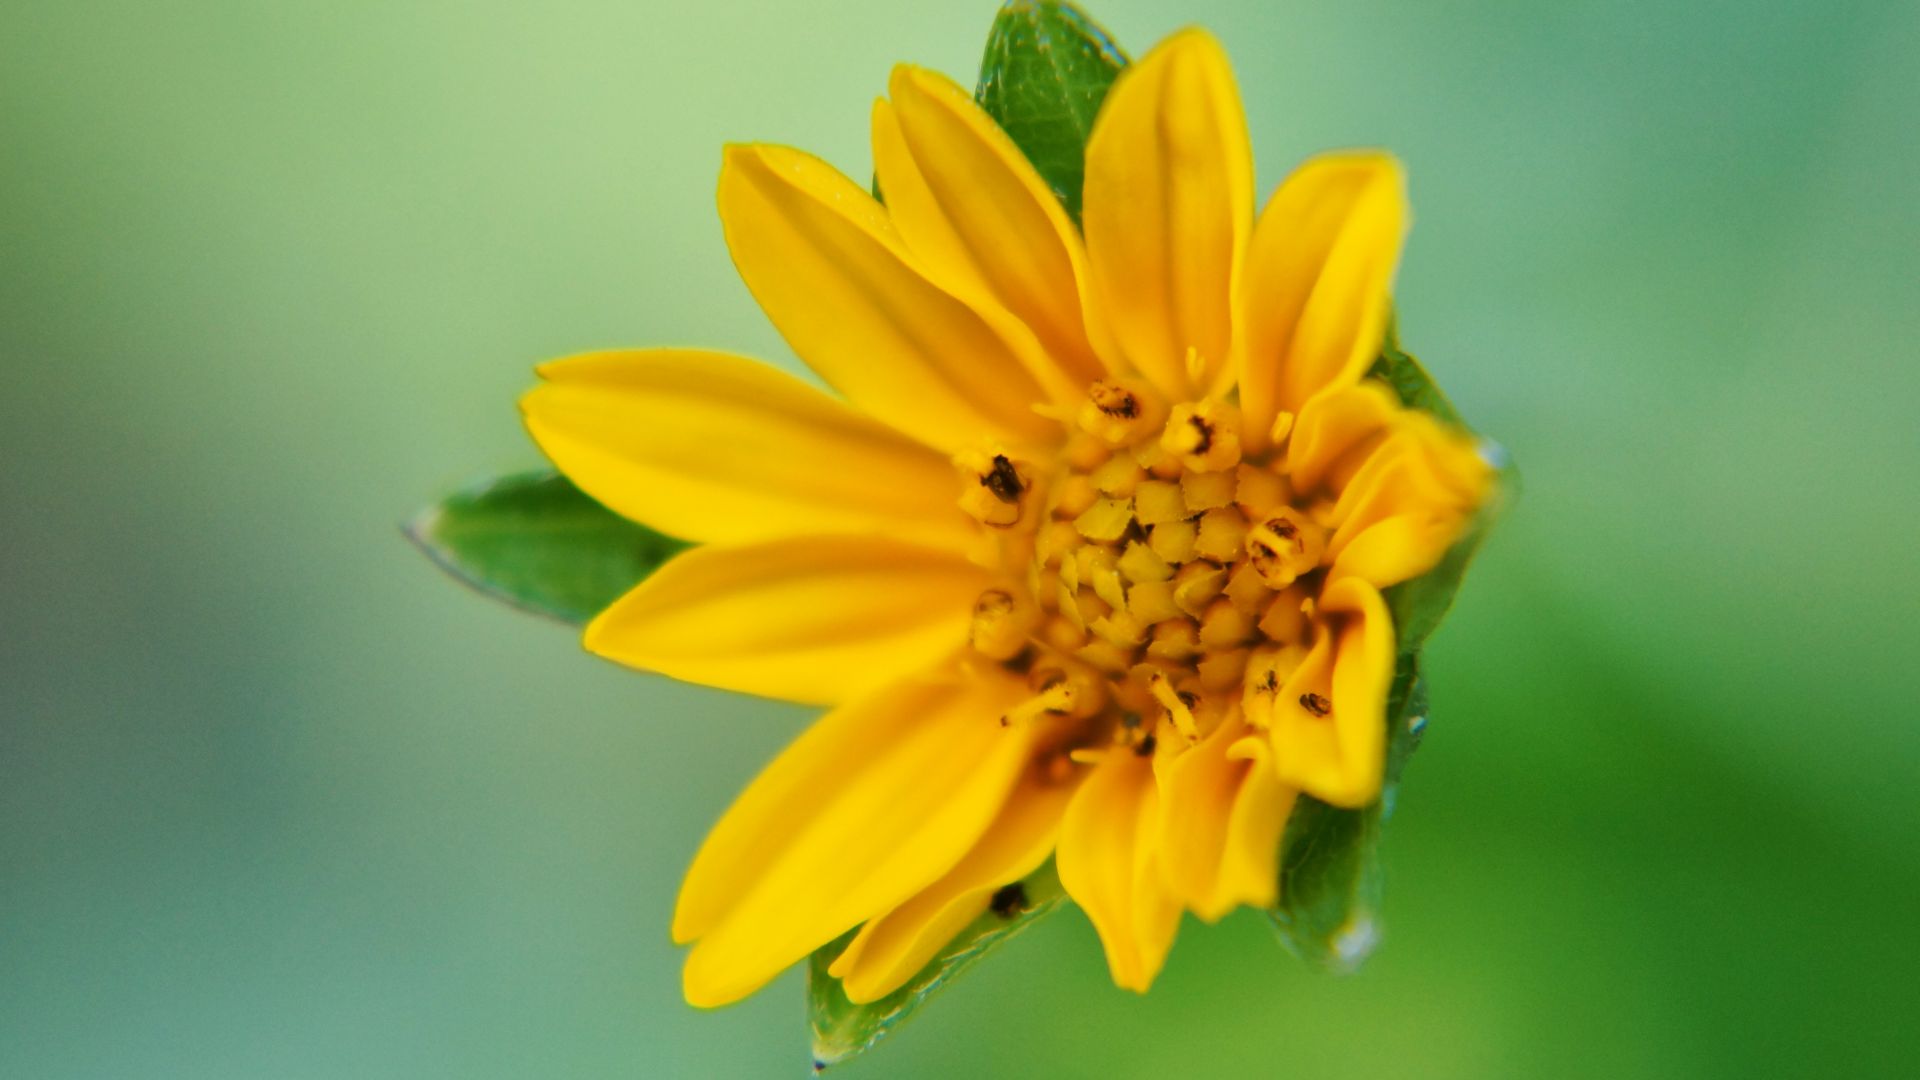 Wallpaper sunflower, Wild flower, close up, yellow, garden